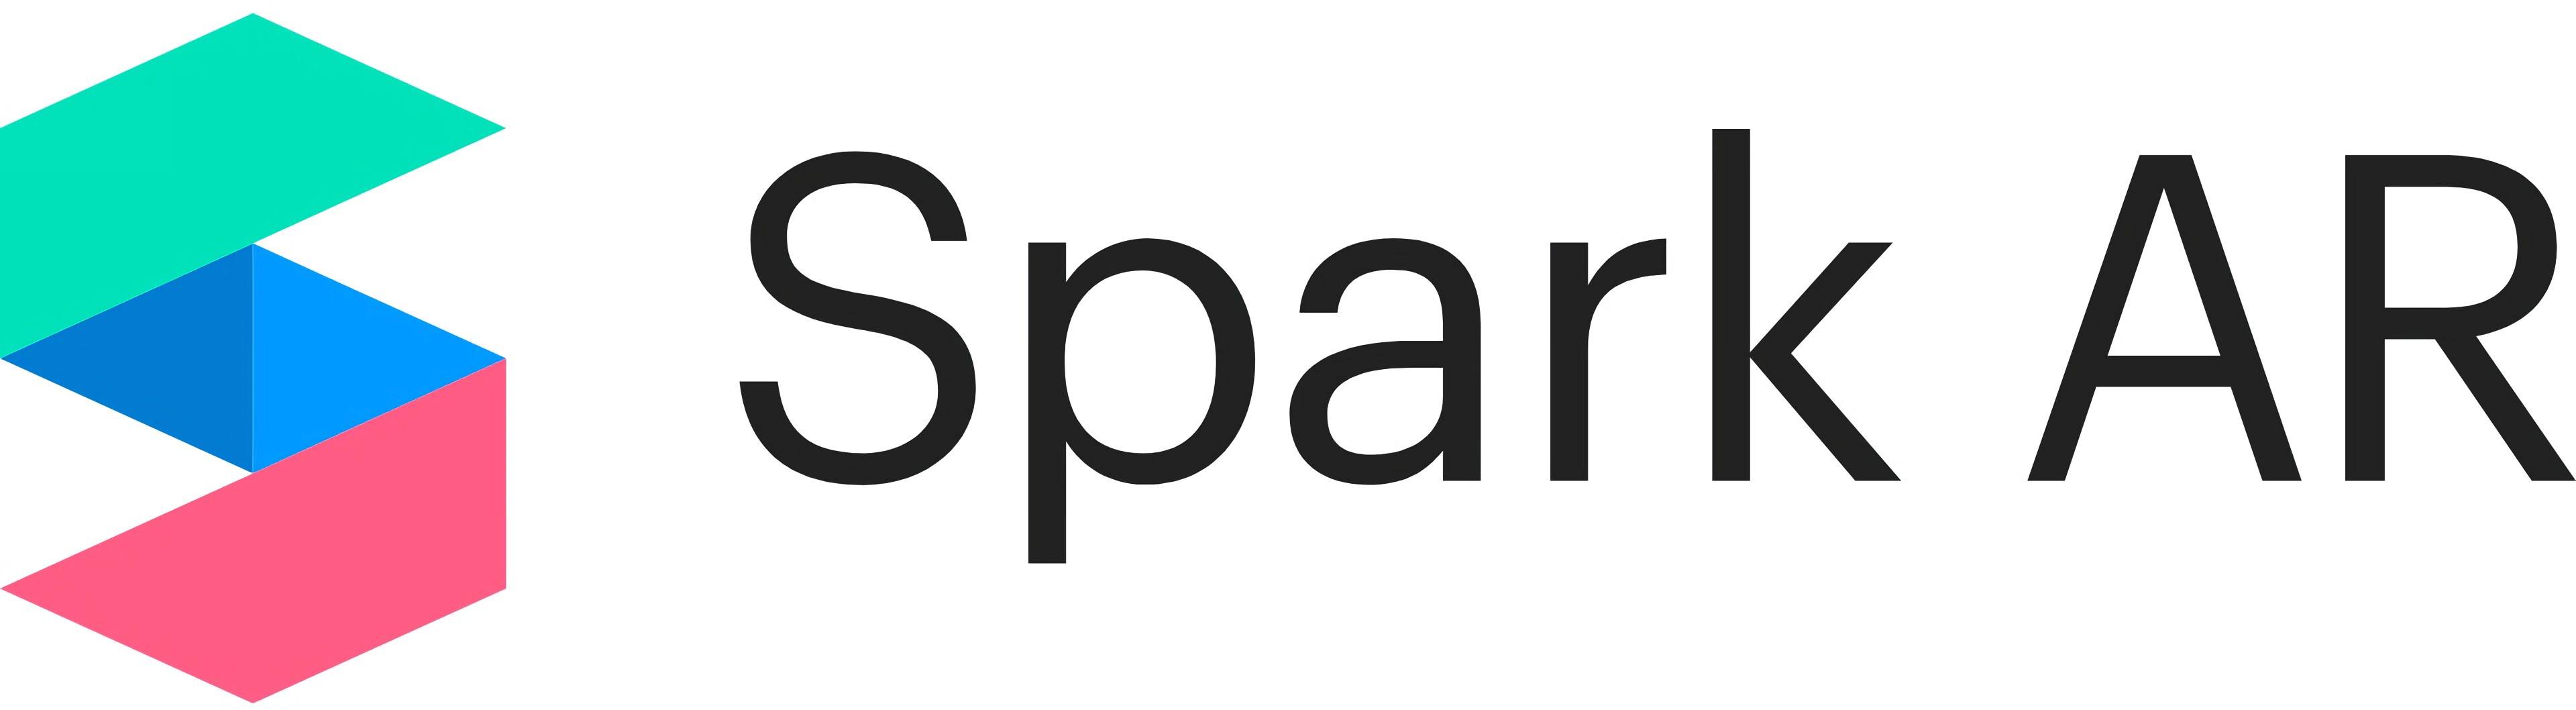 spark-ar-logo